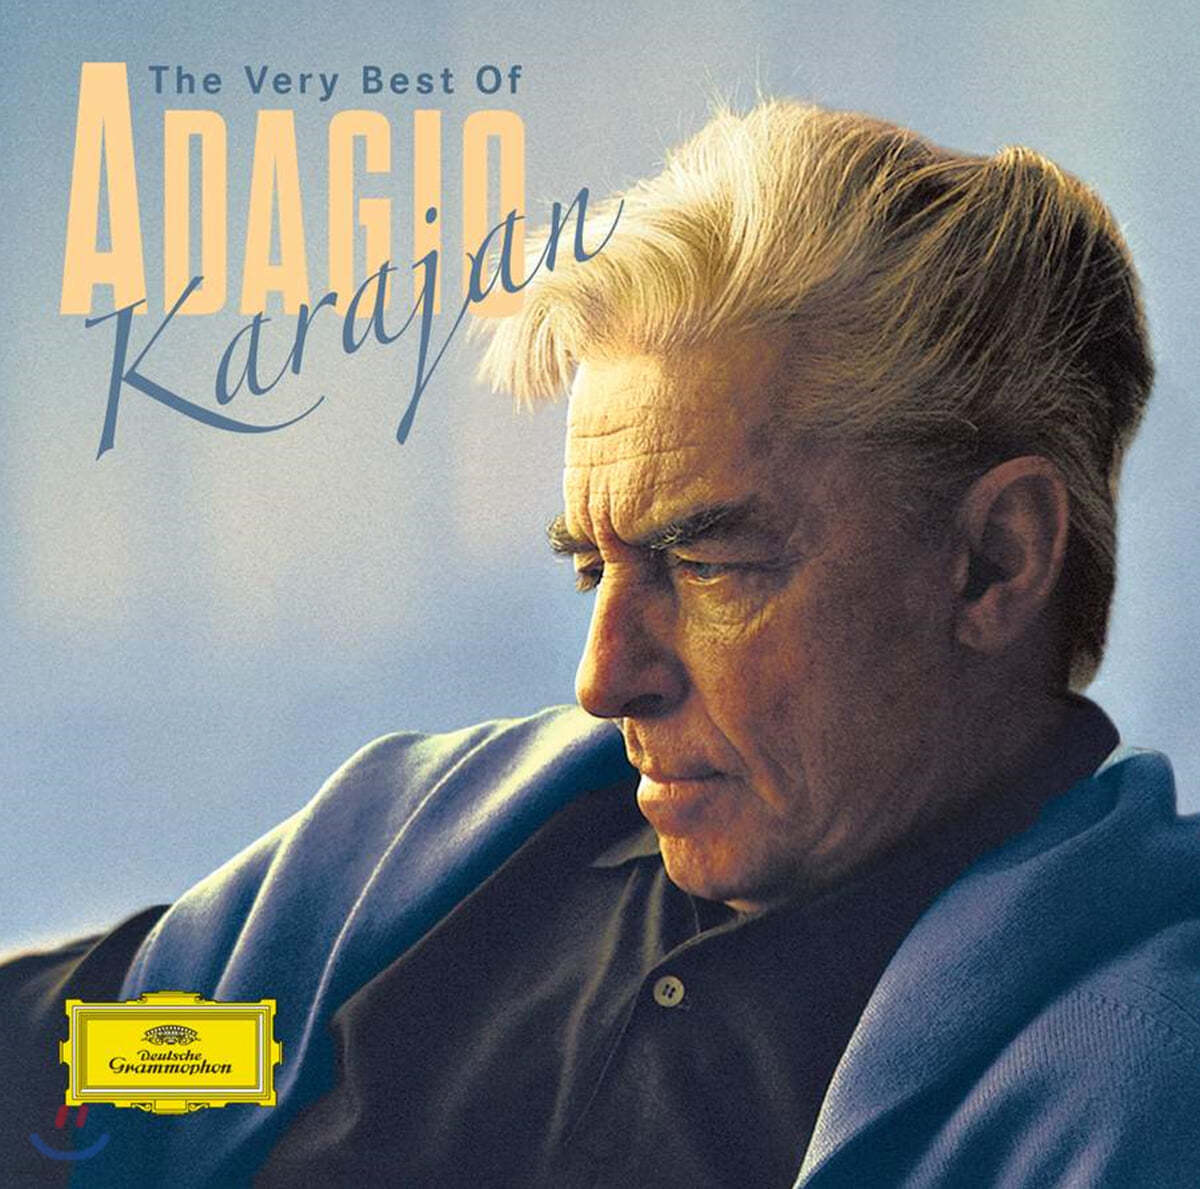 Herbert von Karajan 베스트 오브 카라얀 아다지오 (The Very Best of Adagio)